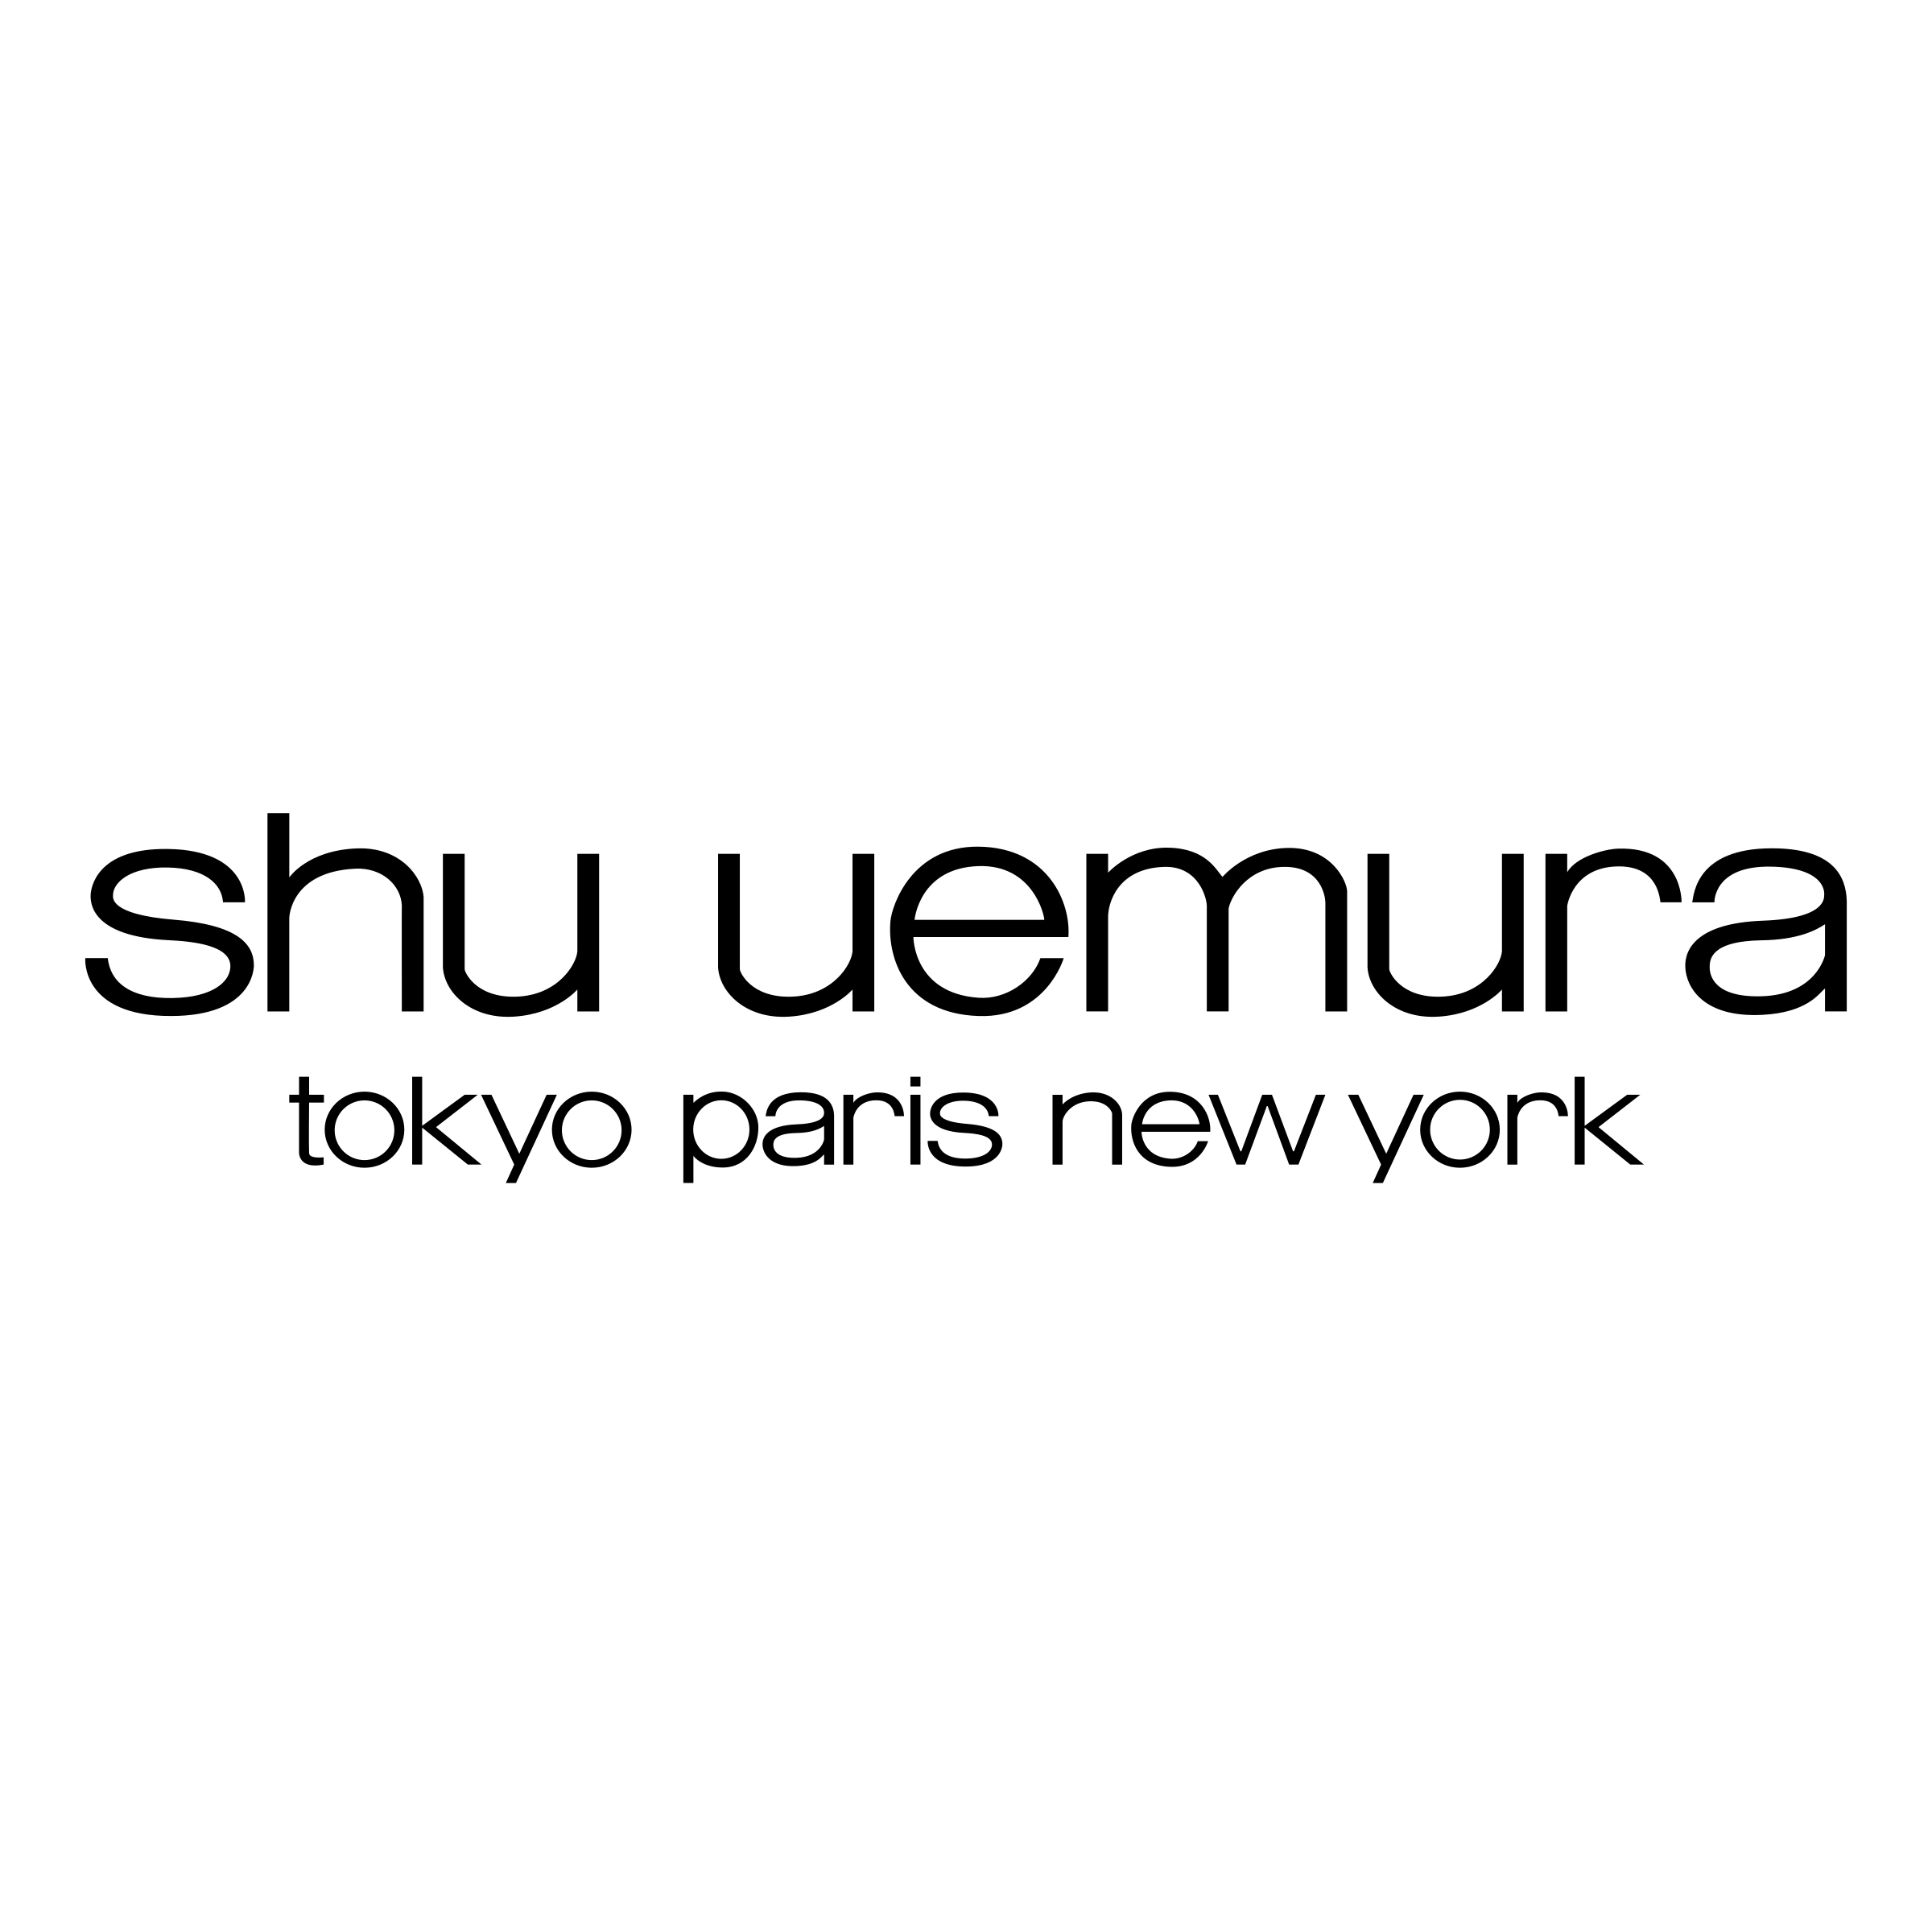 Shu Uemura Logo PNG Transparent & SVG Vector - Freebie Supply